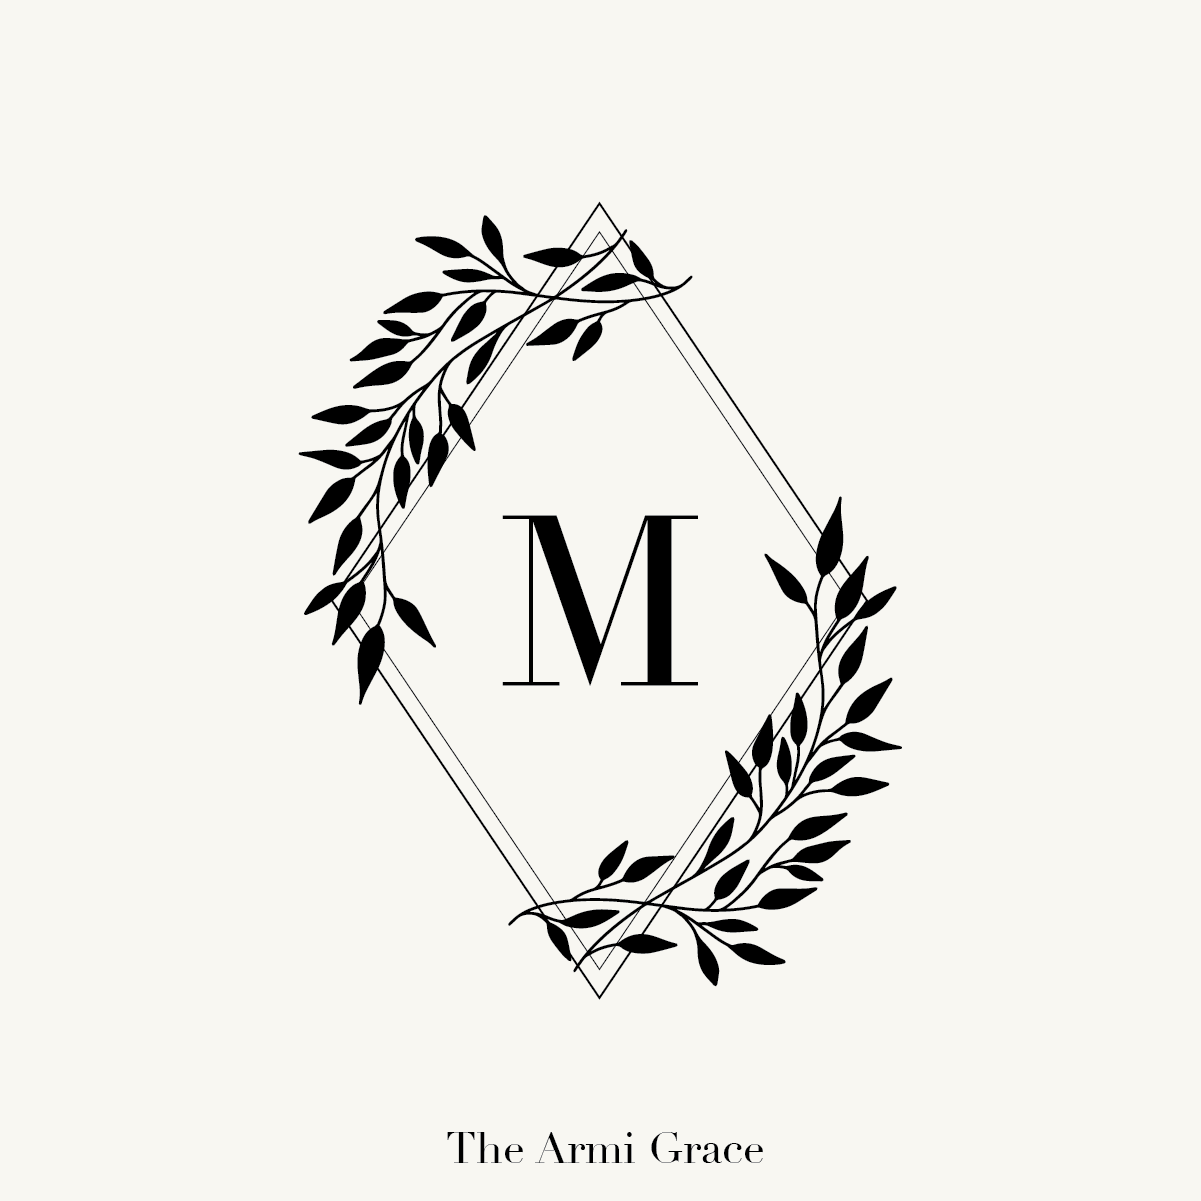 mm wedding logo